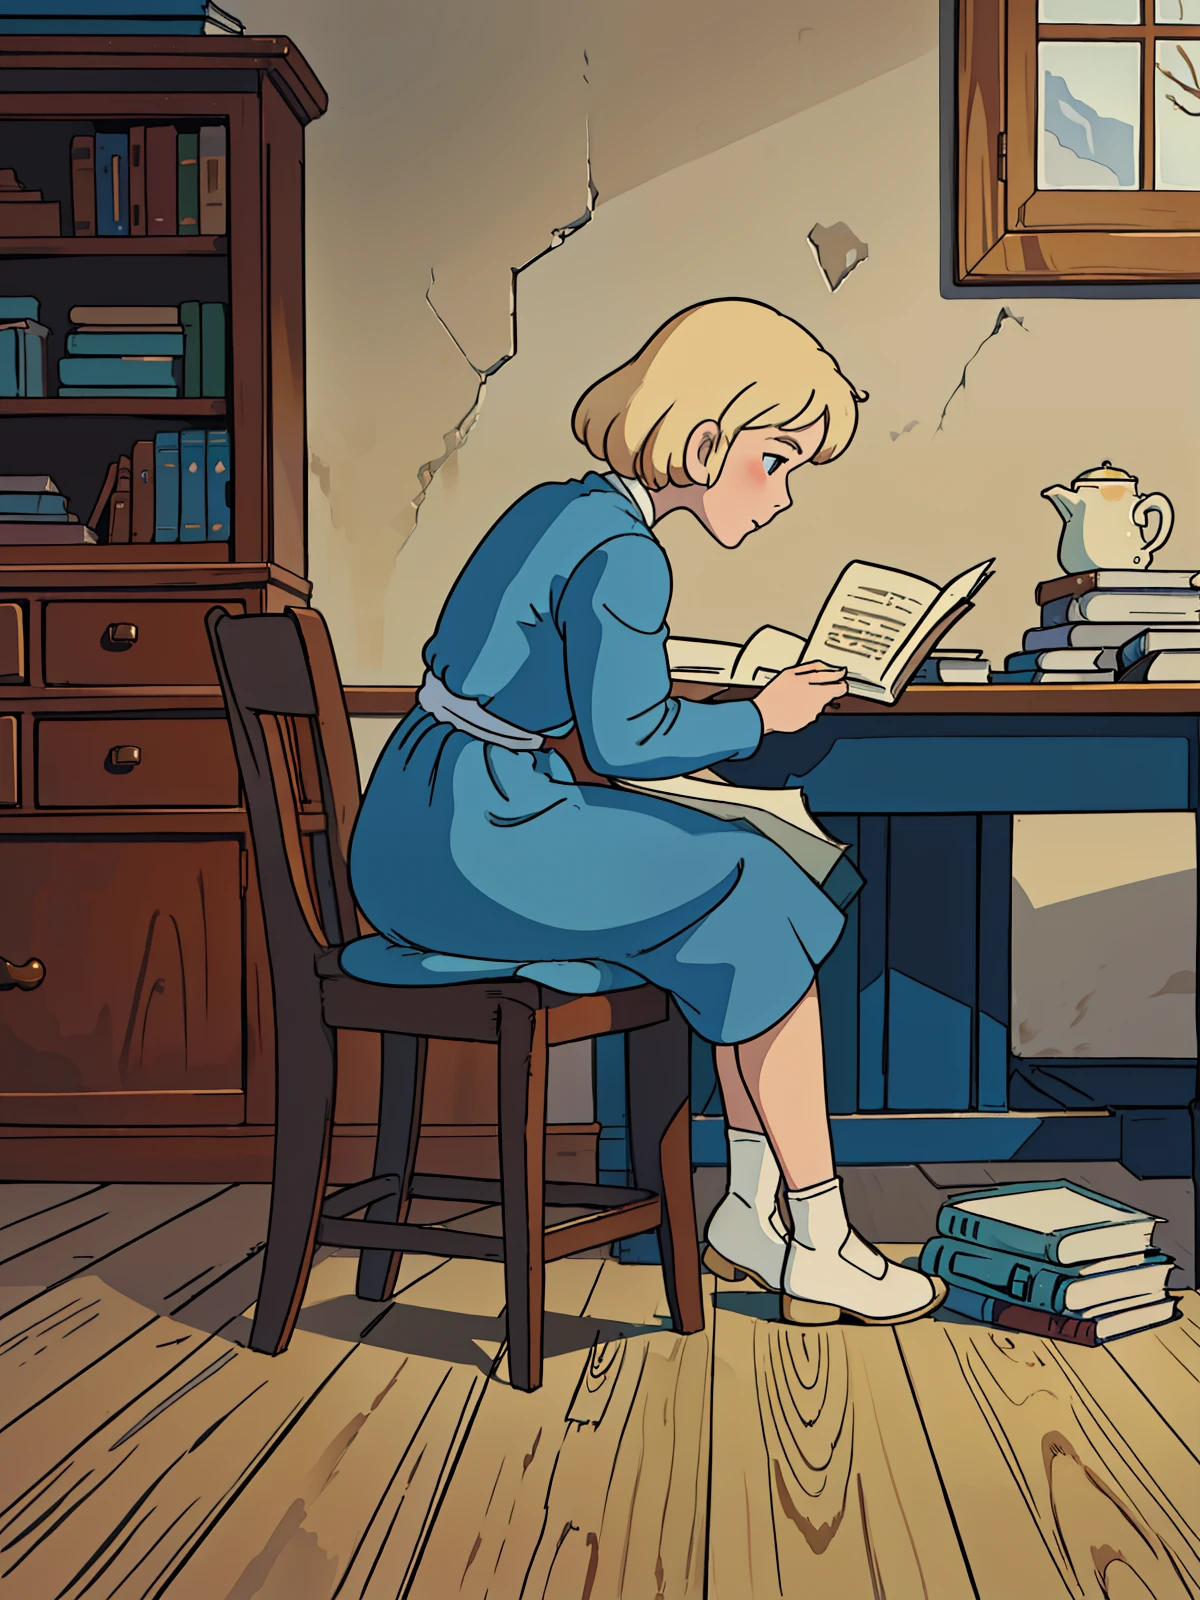 クララ, 金髪, 茶色い目の少女, 白いディテールの青いドレスを着ています, テーブルに座っている, 地理の本を読む (最高品質) (8k) (最高のレンダリング) (傑作) (完璧な解剖学)